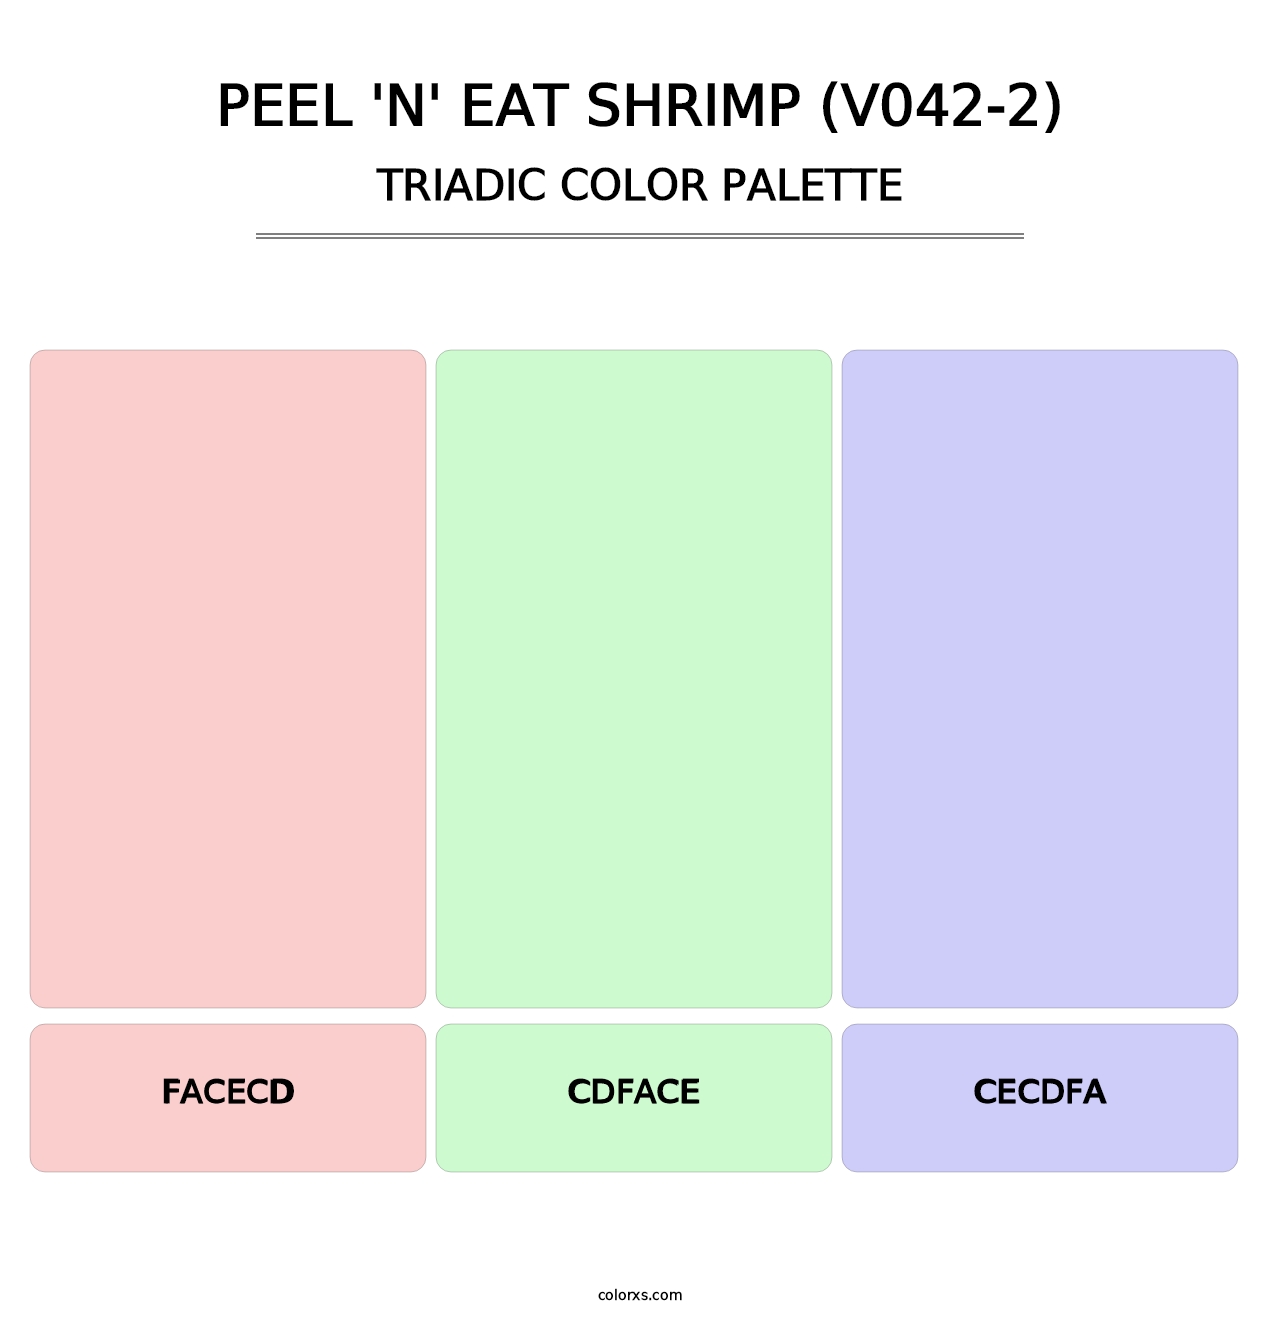 Peel 'n' Eat Shrimp (V042-2) - Triadic Color Palette